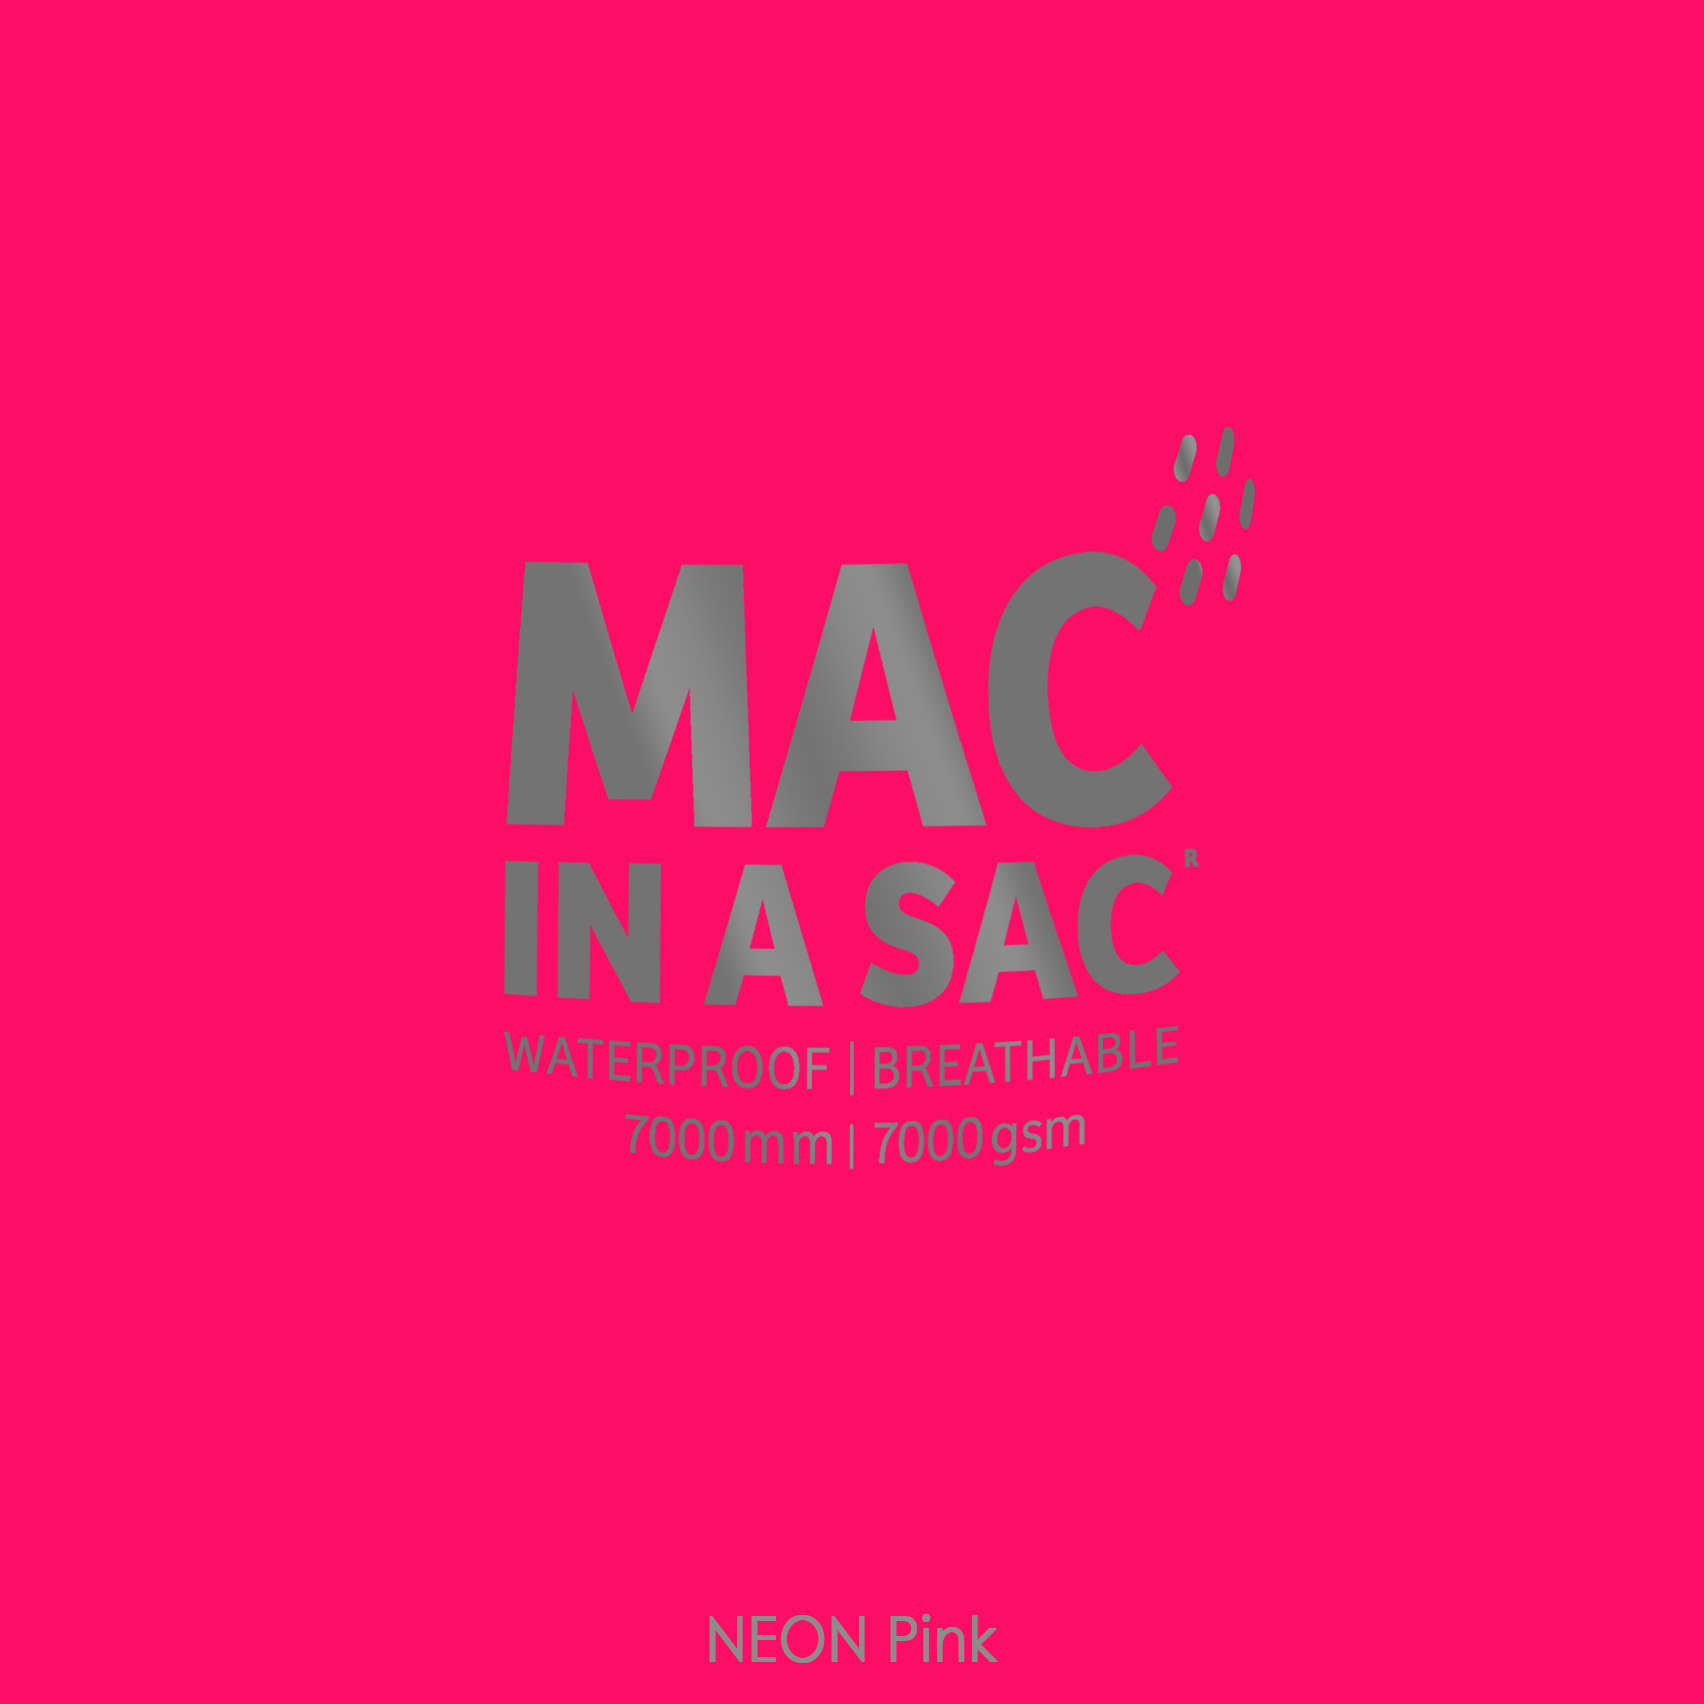 Mac in a Sac Regenjas Neon Roze